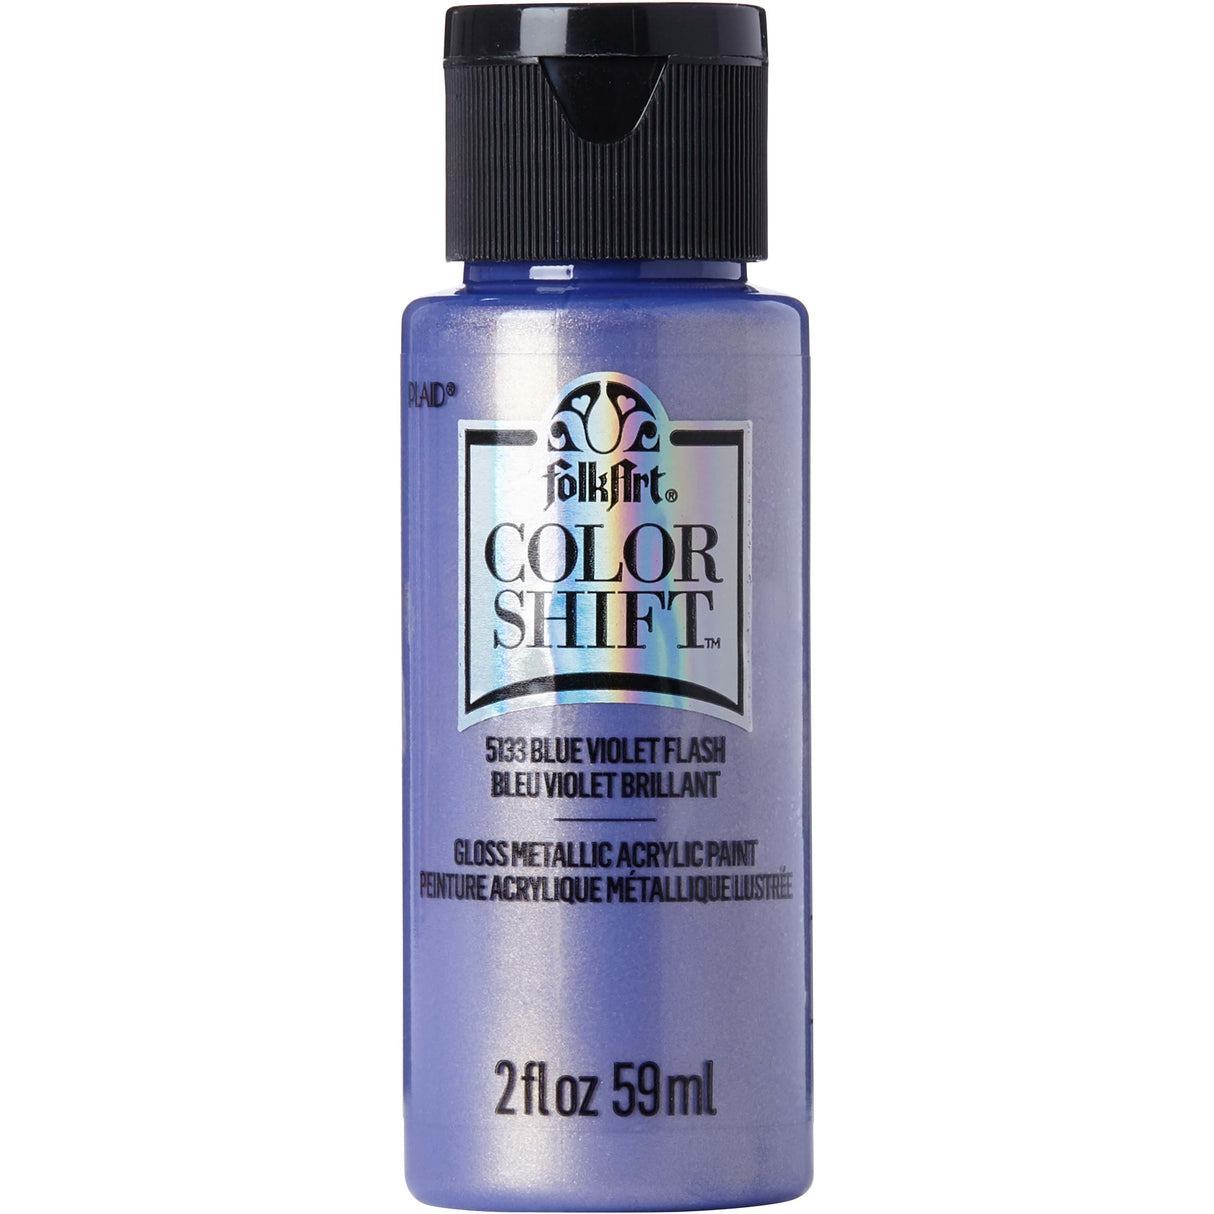 color shift acrylic paint blue violet flash